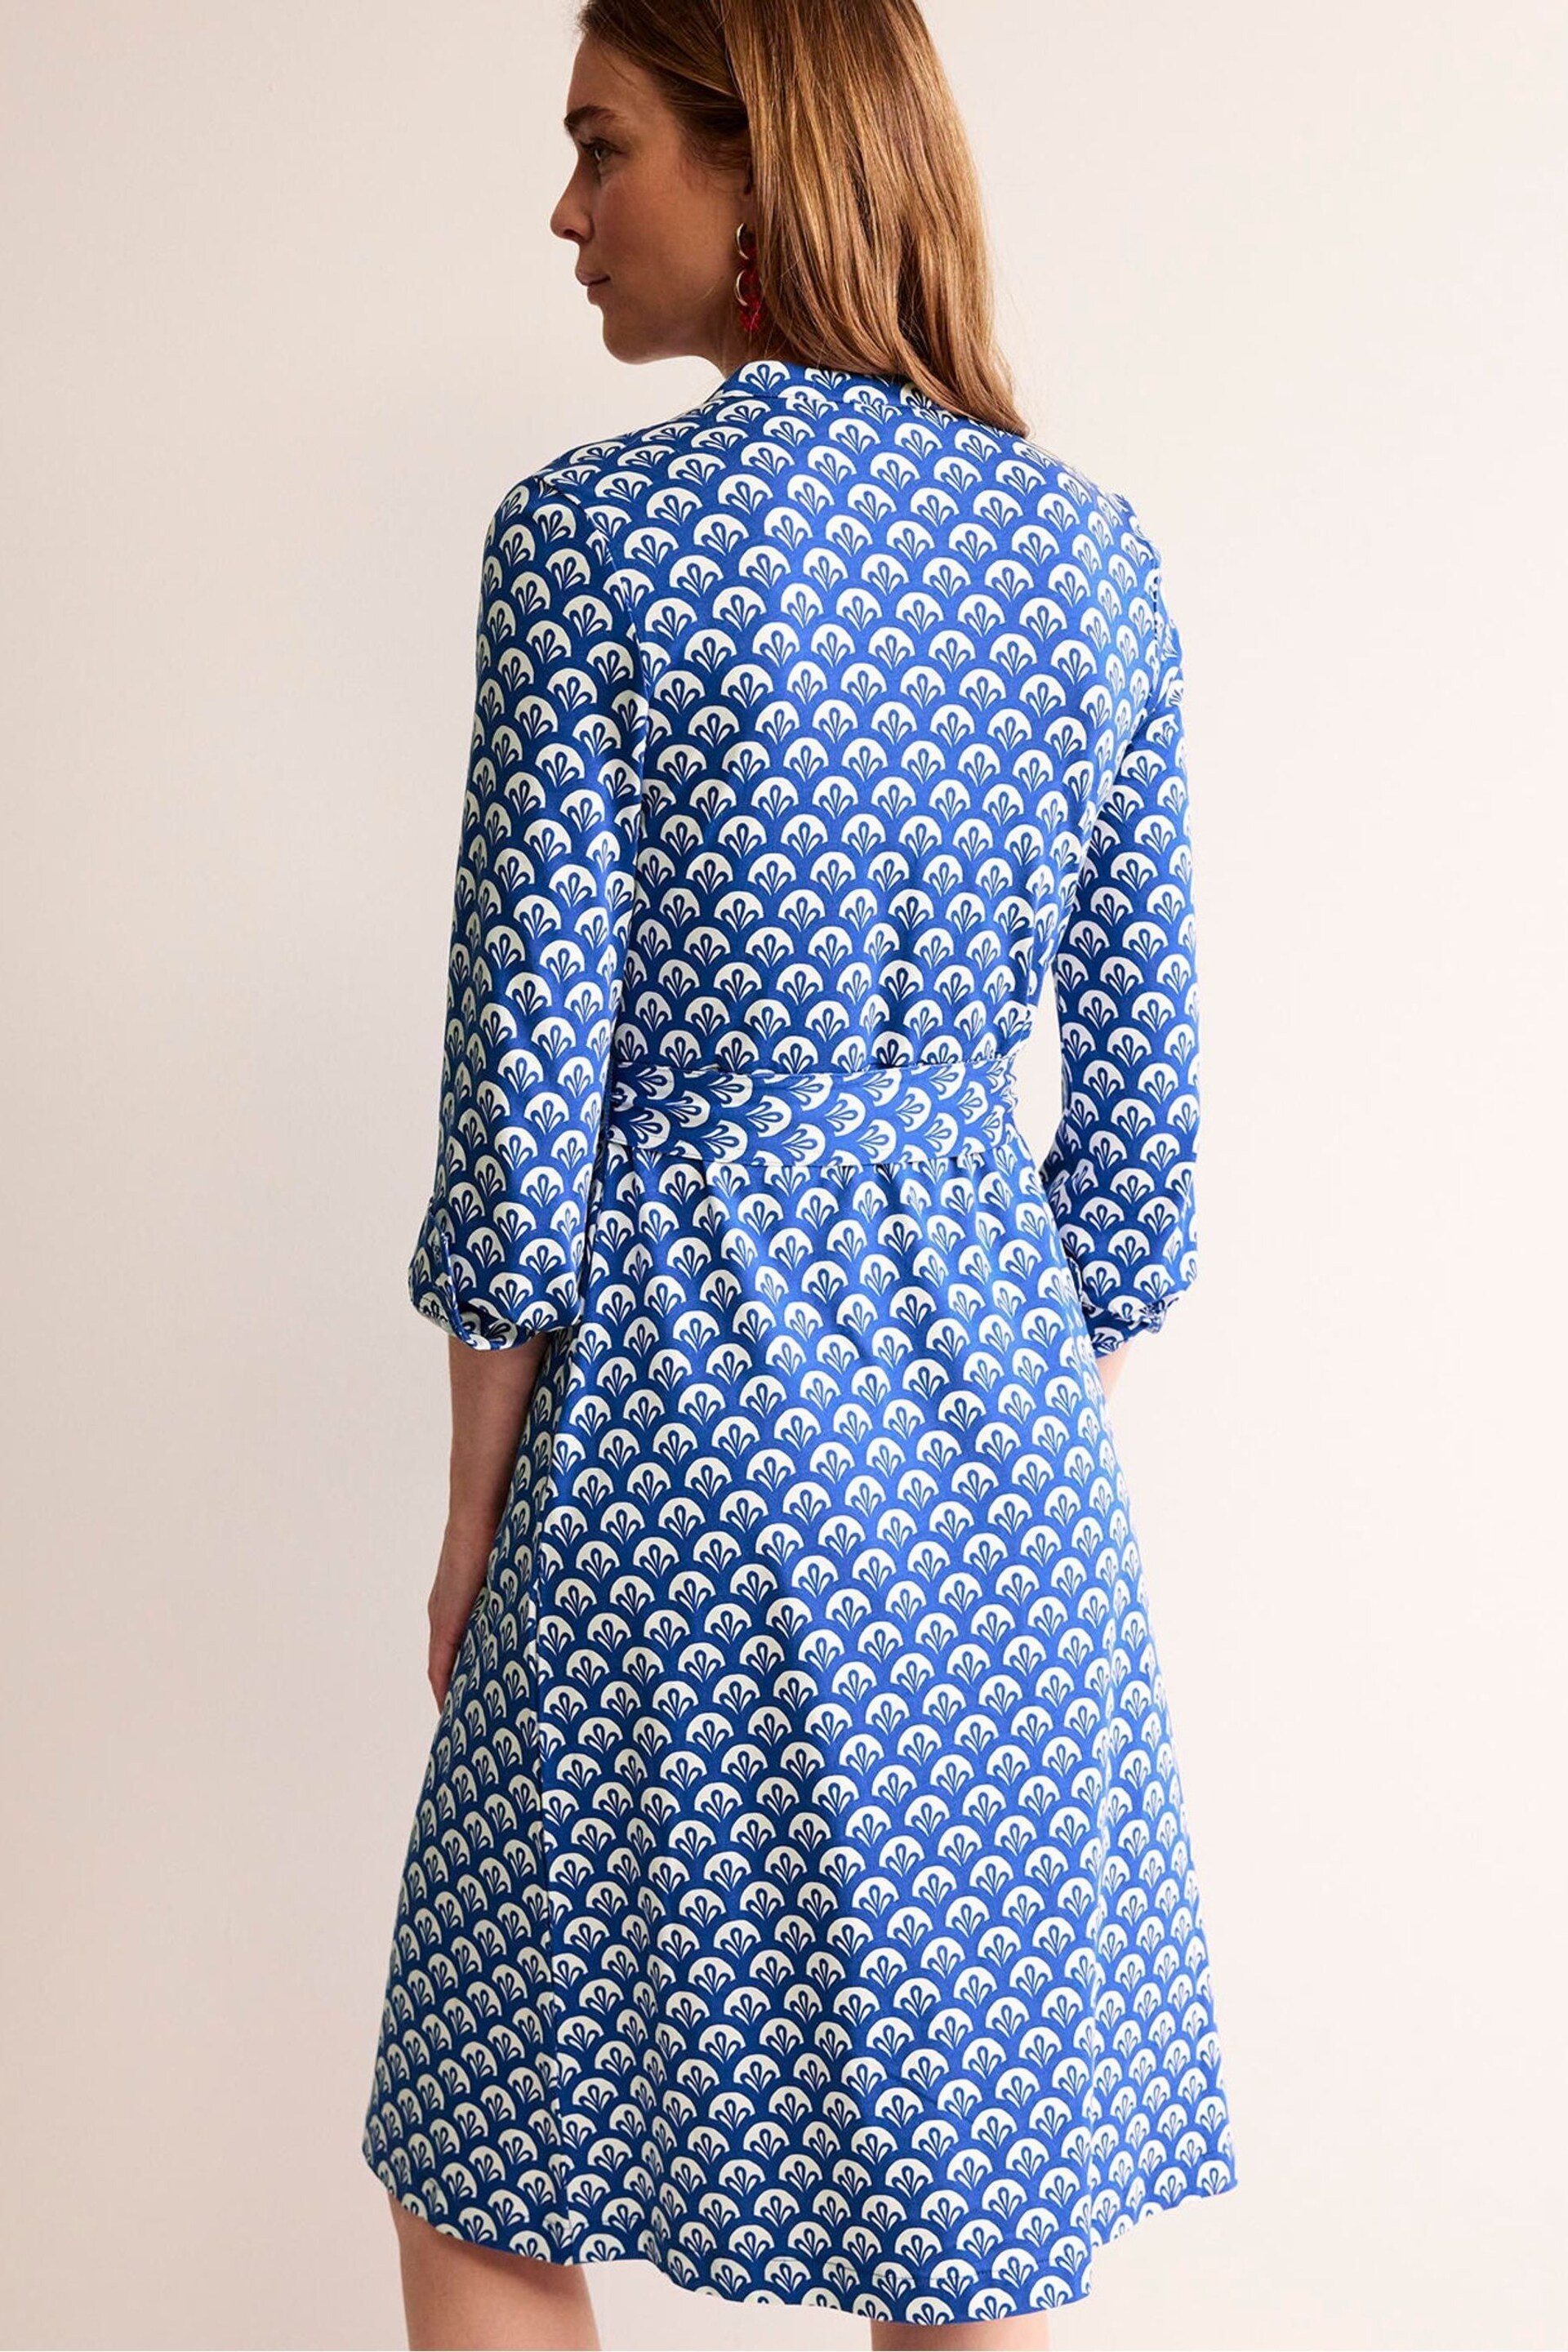 Boden Blue Julia Jersey Shirt Dress - Image 2 of 5